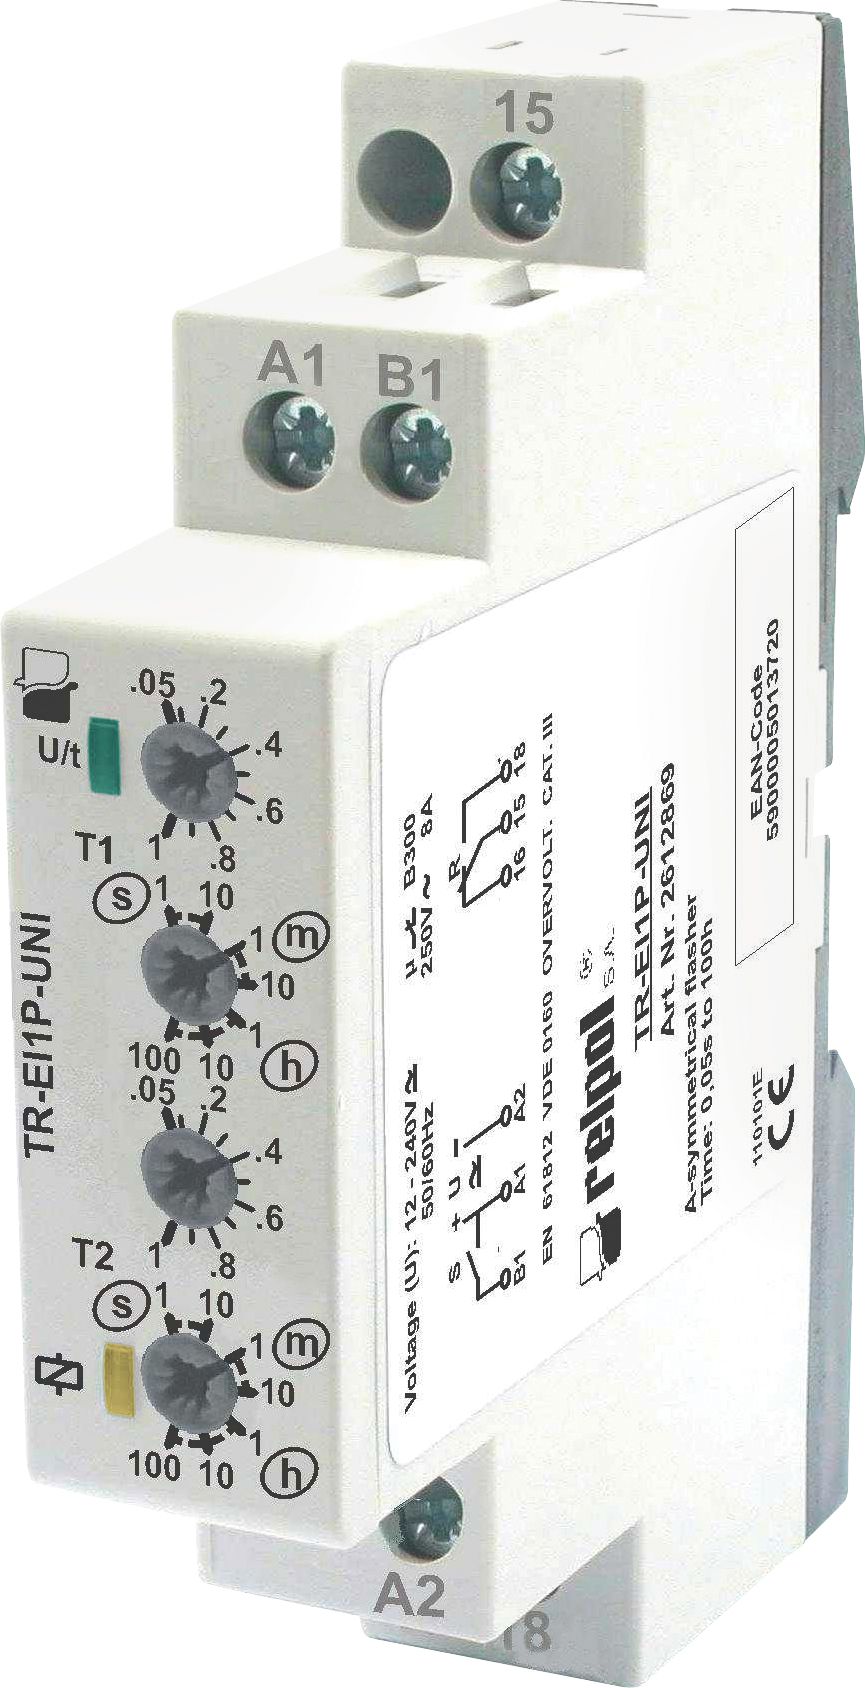 Releu temporizator TR-UNI-EI1P multifuncțional 1P 8A 1s - 100 h 12 - 240V AC / DC (2612869)